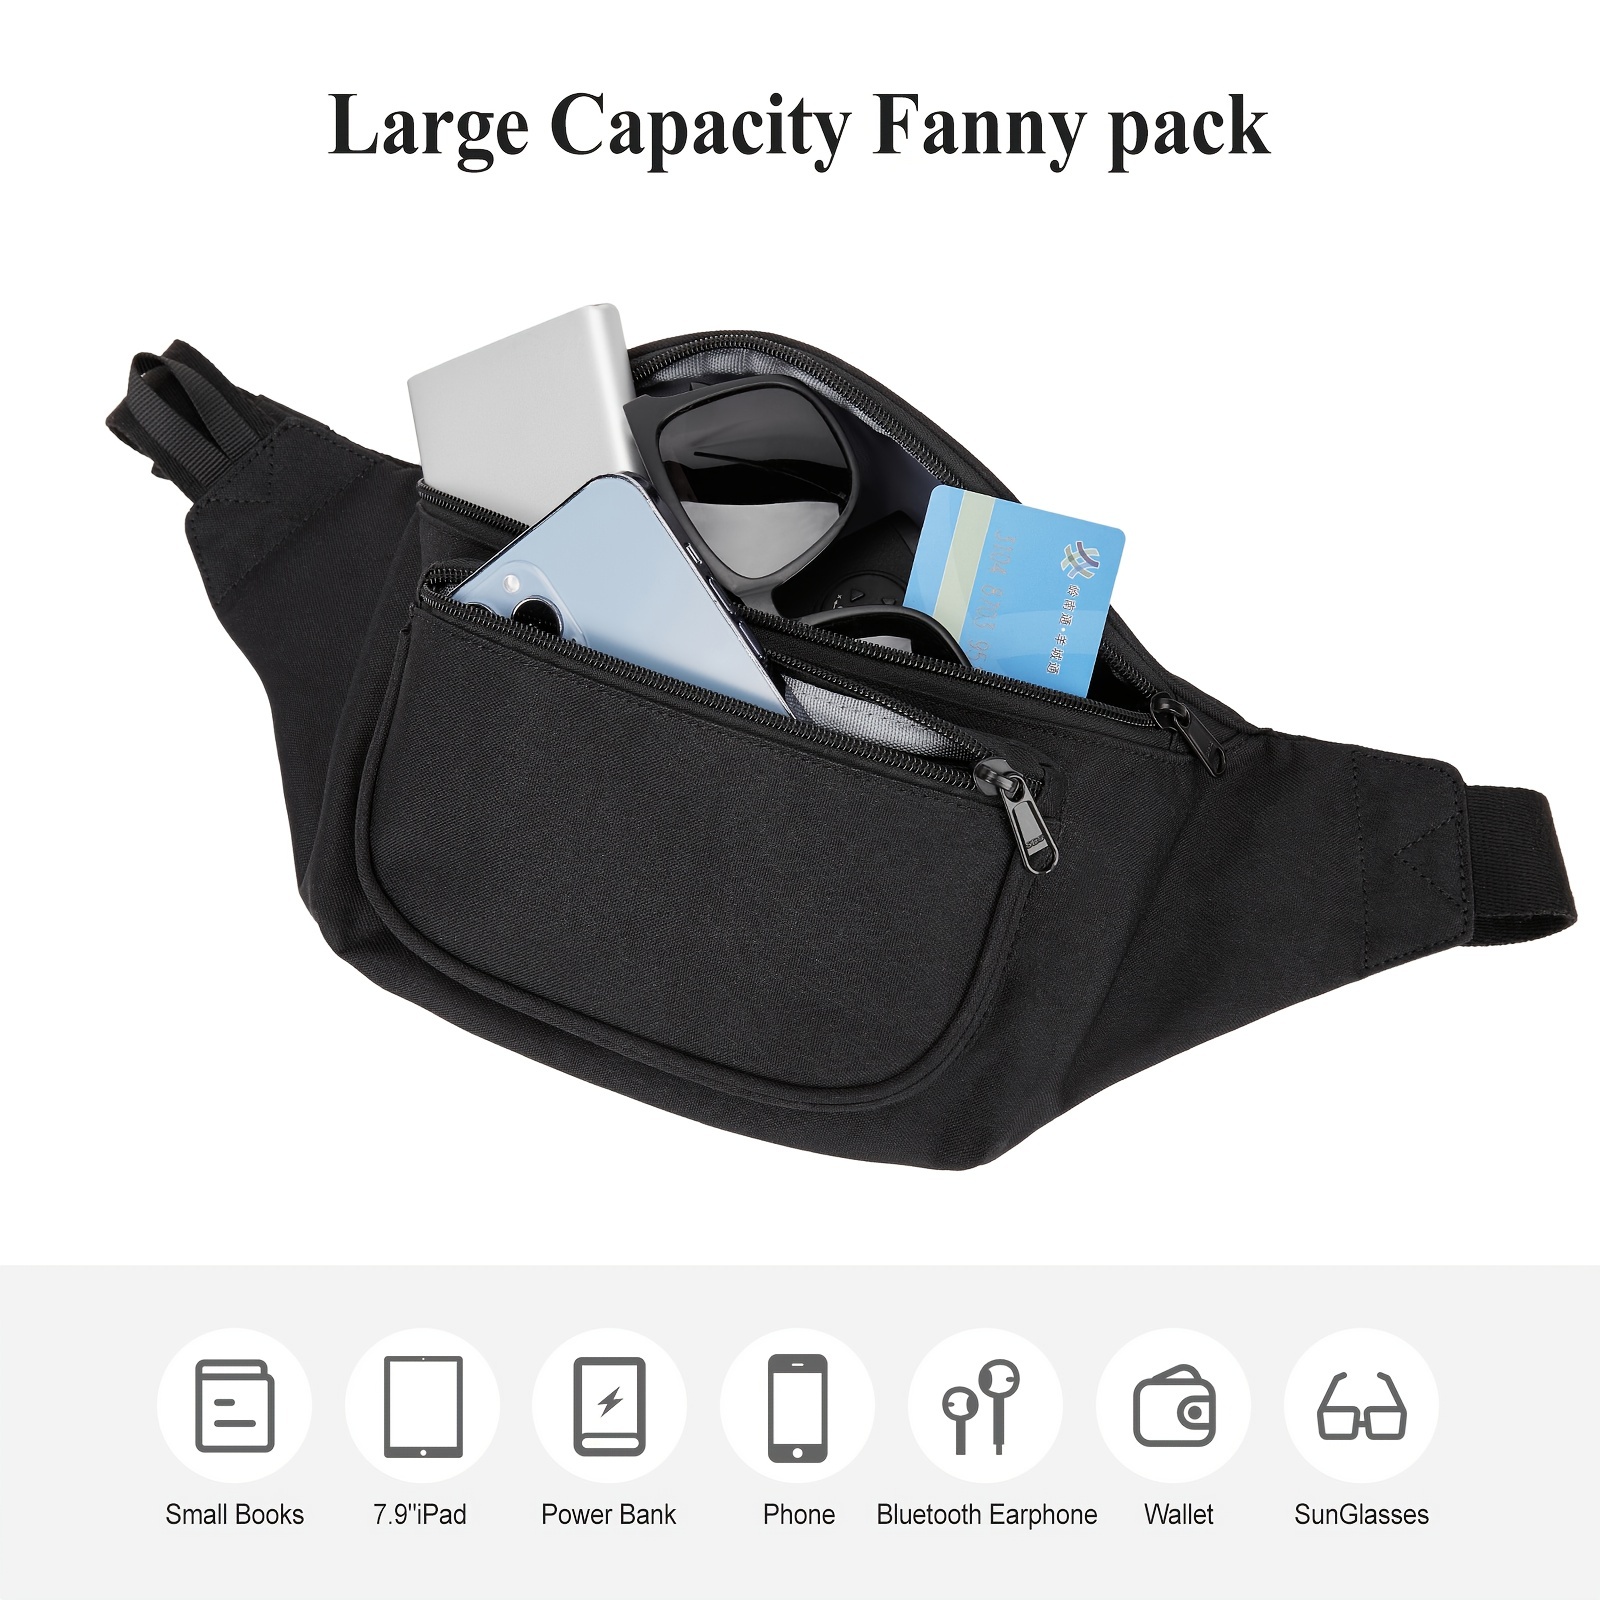 sportsnew Fanny Packs for Men Women - Waist Bag Packs - Large Capacity Belt Bag for Travel Sports Running Hiking Large, Black